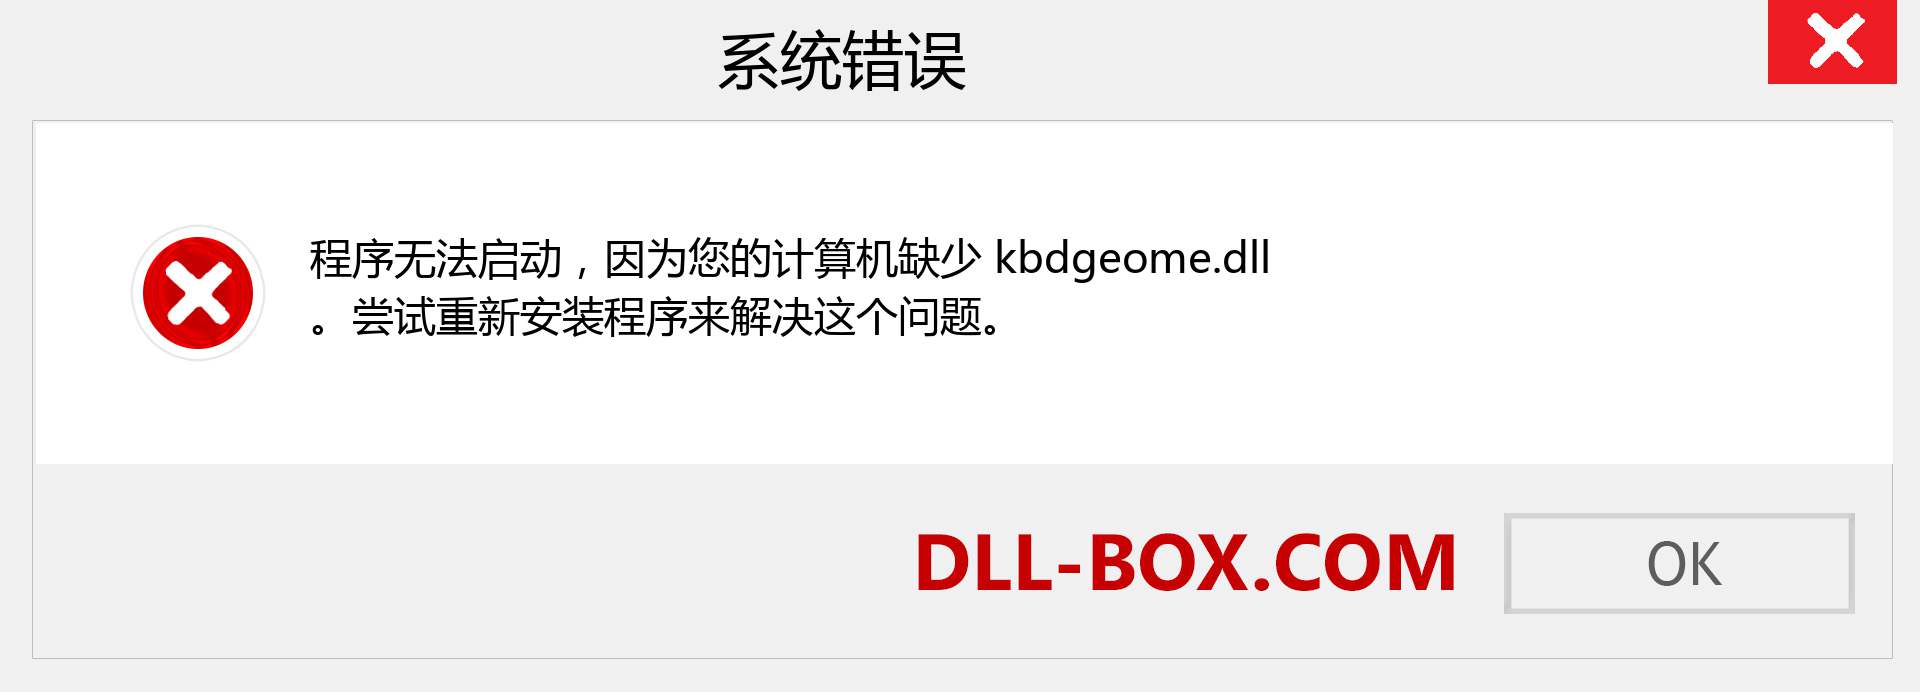 kbdgeome.dll 文件丢失？。 适用于 Windows 7、8、10 的下载 - 修复 Windows、照片、图像上的 kbdgeome dll 丢失错误